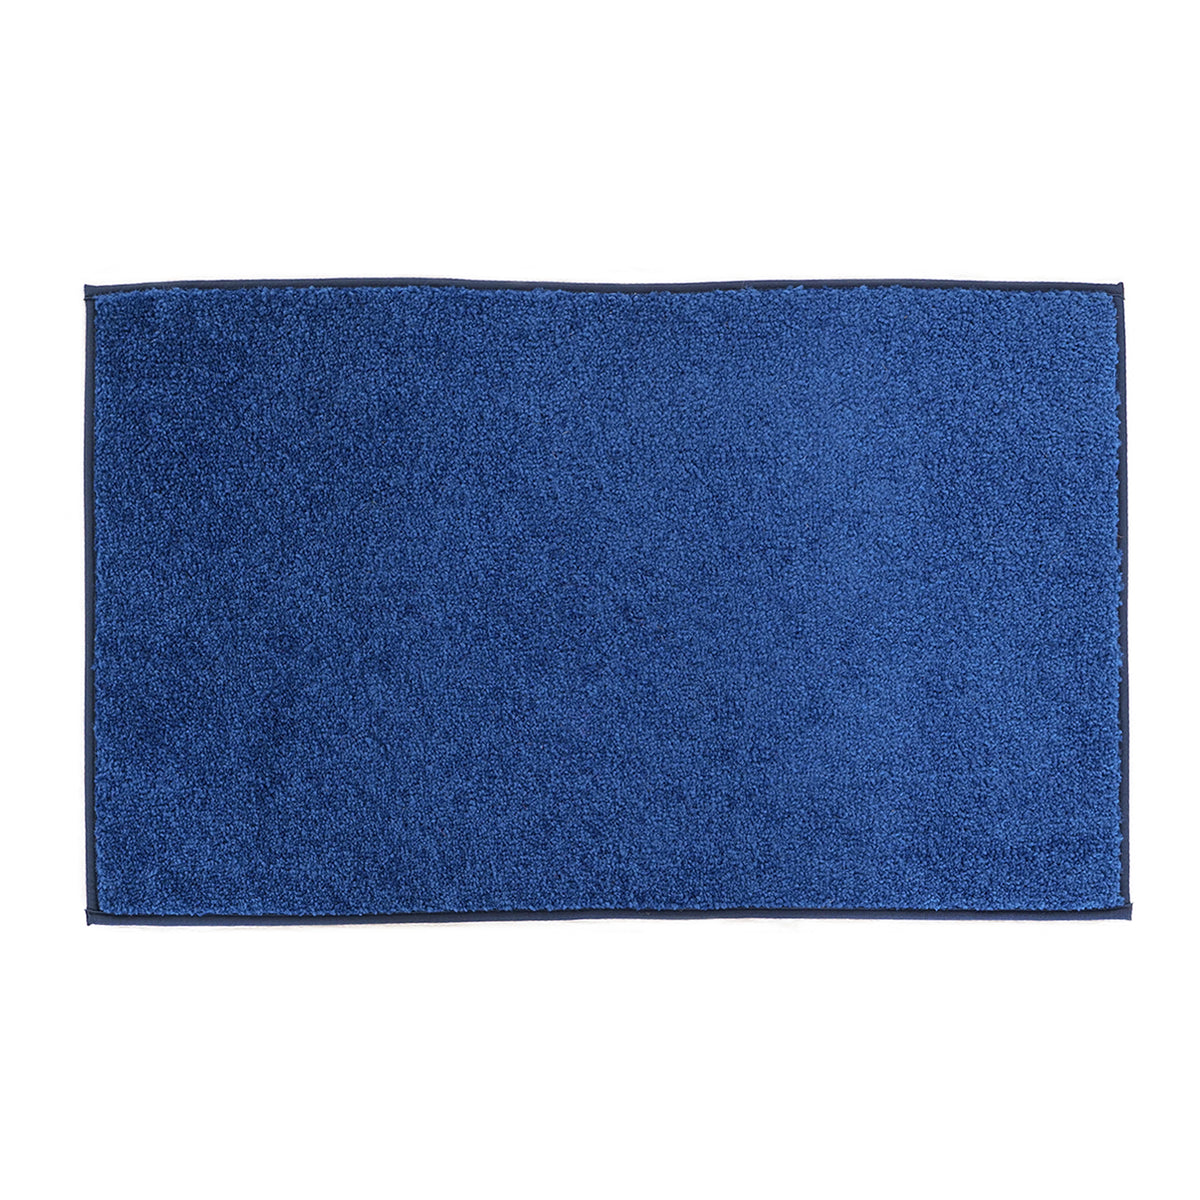 OnlyMat Soft Quickdry Plain Blue Mat  (45cm x 75cm x  8mm) (Blue)